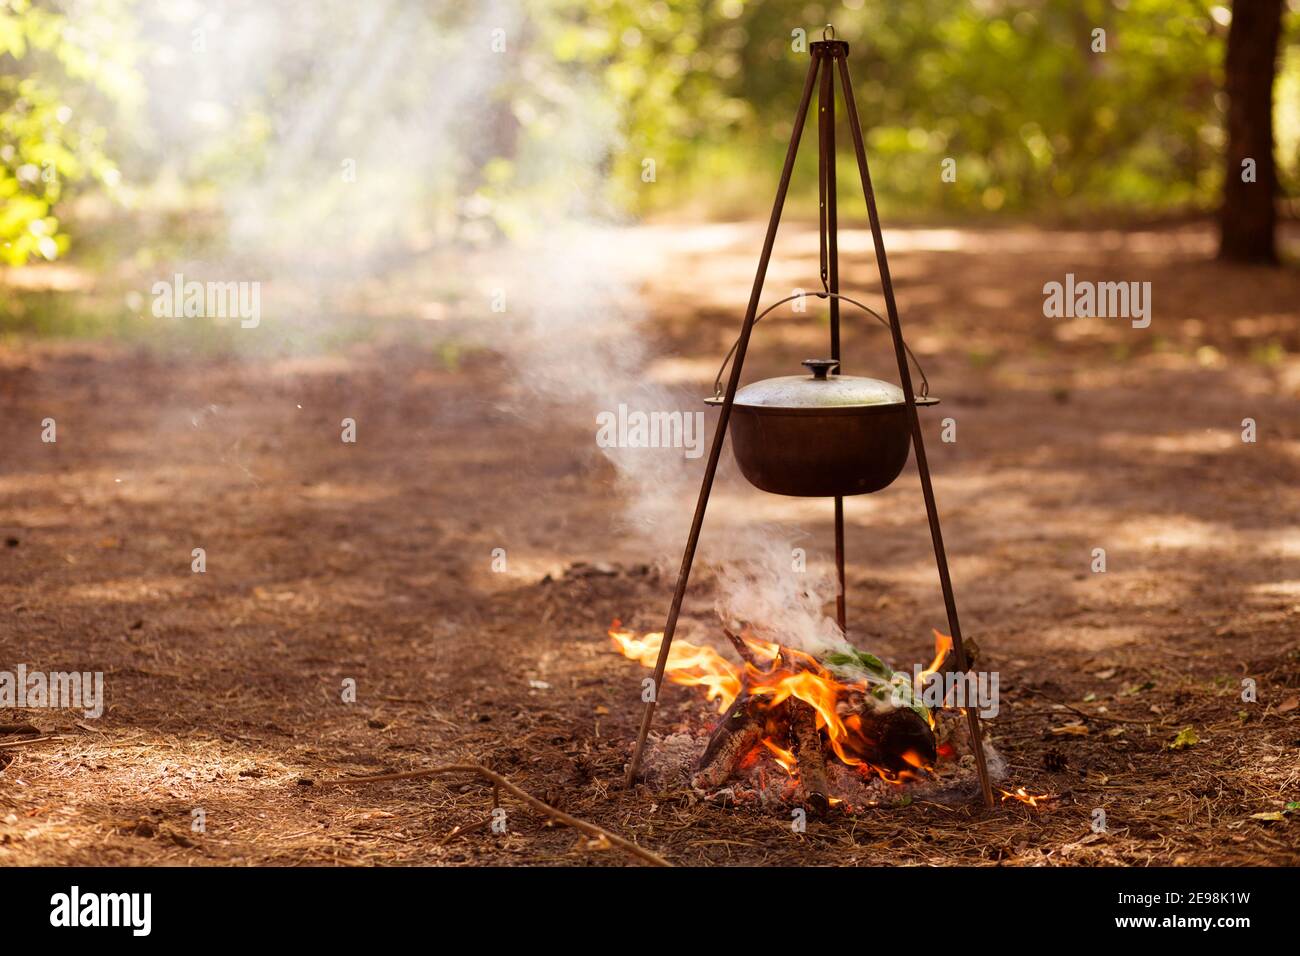 Das Essen wird am Lagerfeuer im Wald gekocht. Reisen, Tourismus, Picknick-Kochen in Kessel, Feuer und Rauch. Stockfoto